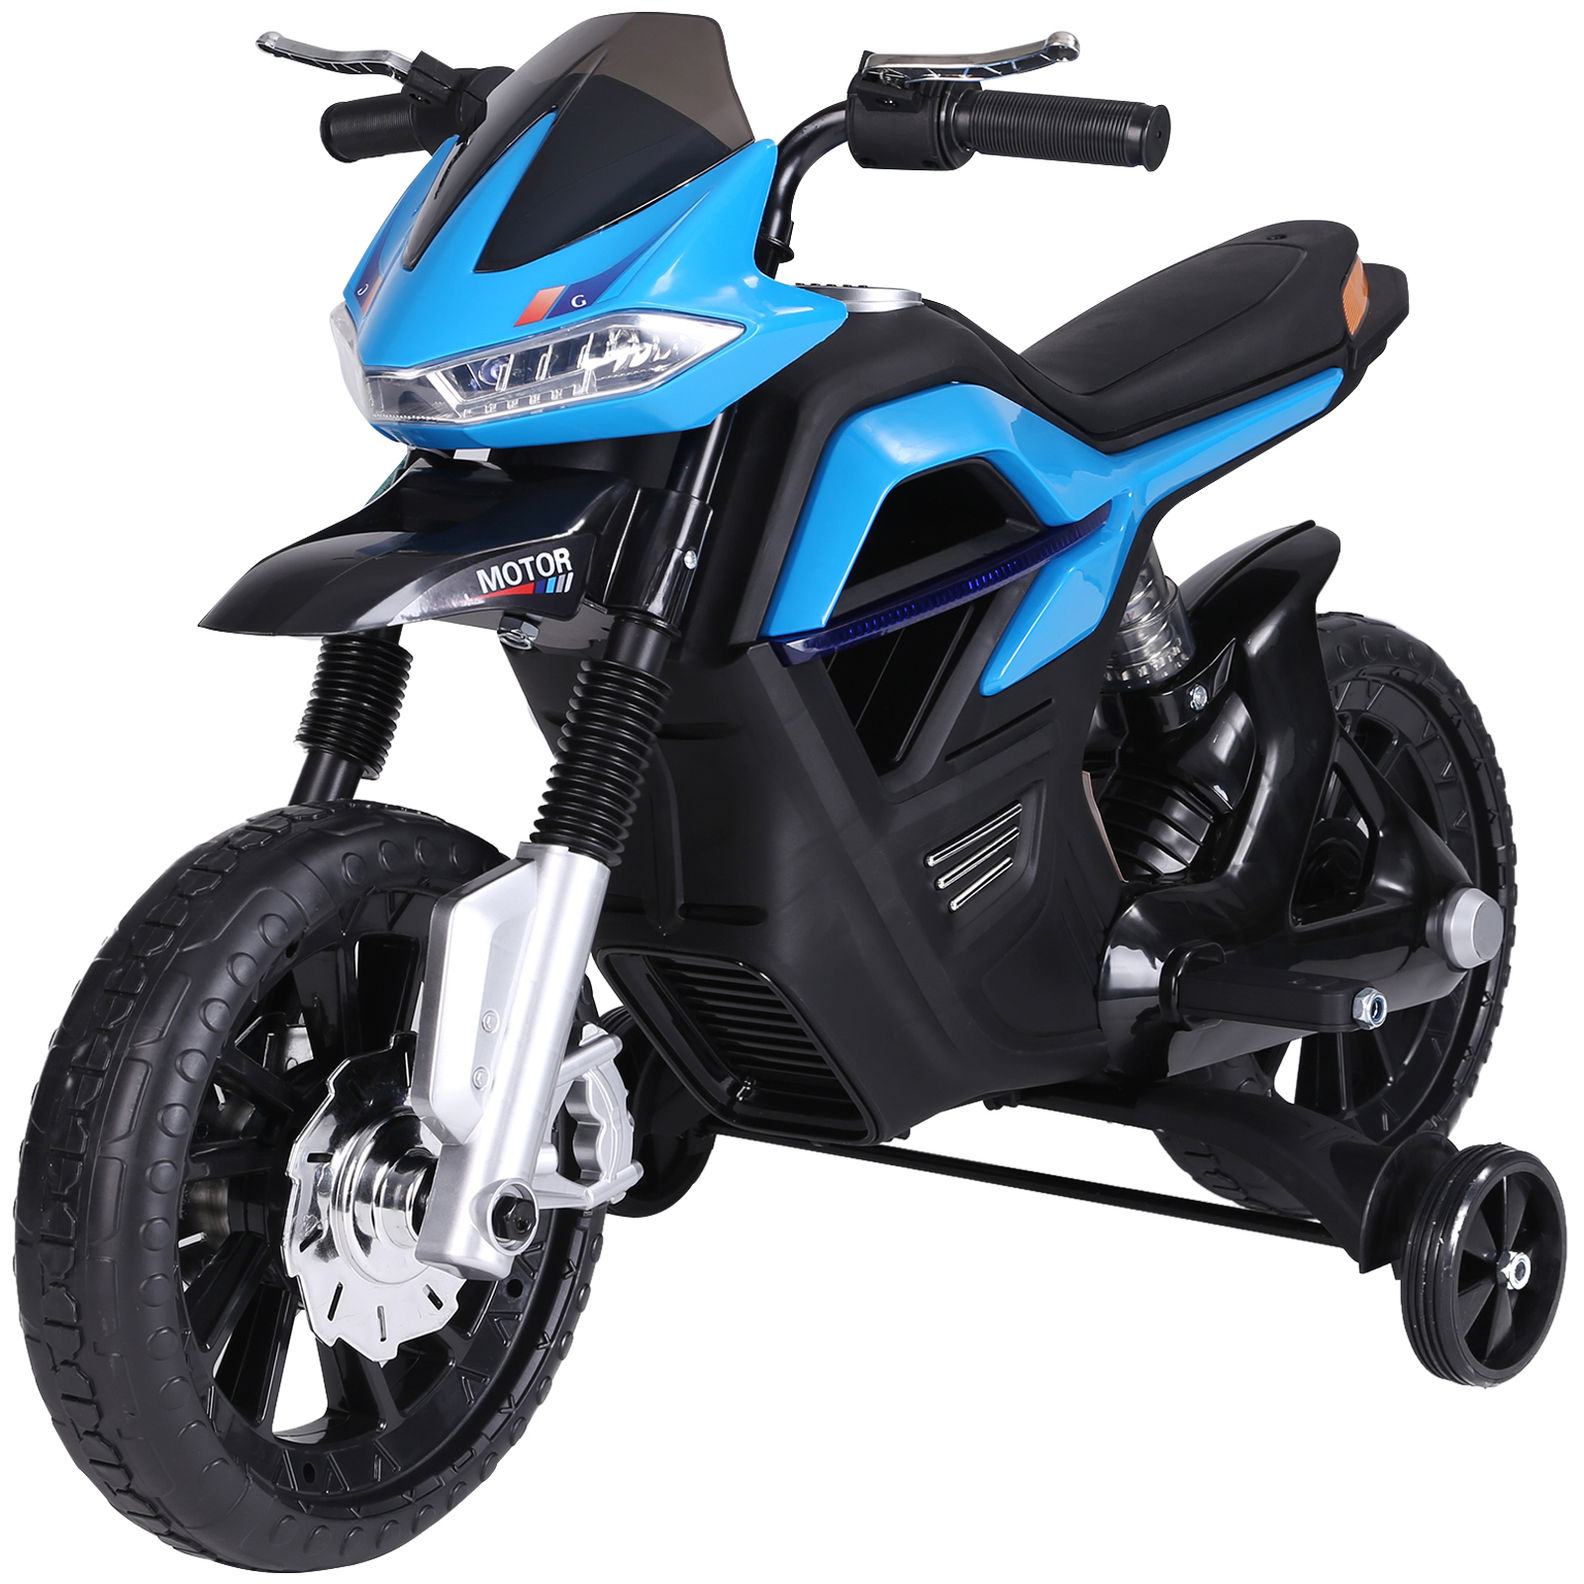 Elektro-Motorrad für Kinder Farbe: blau bestellen | Weltbild.de